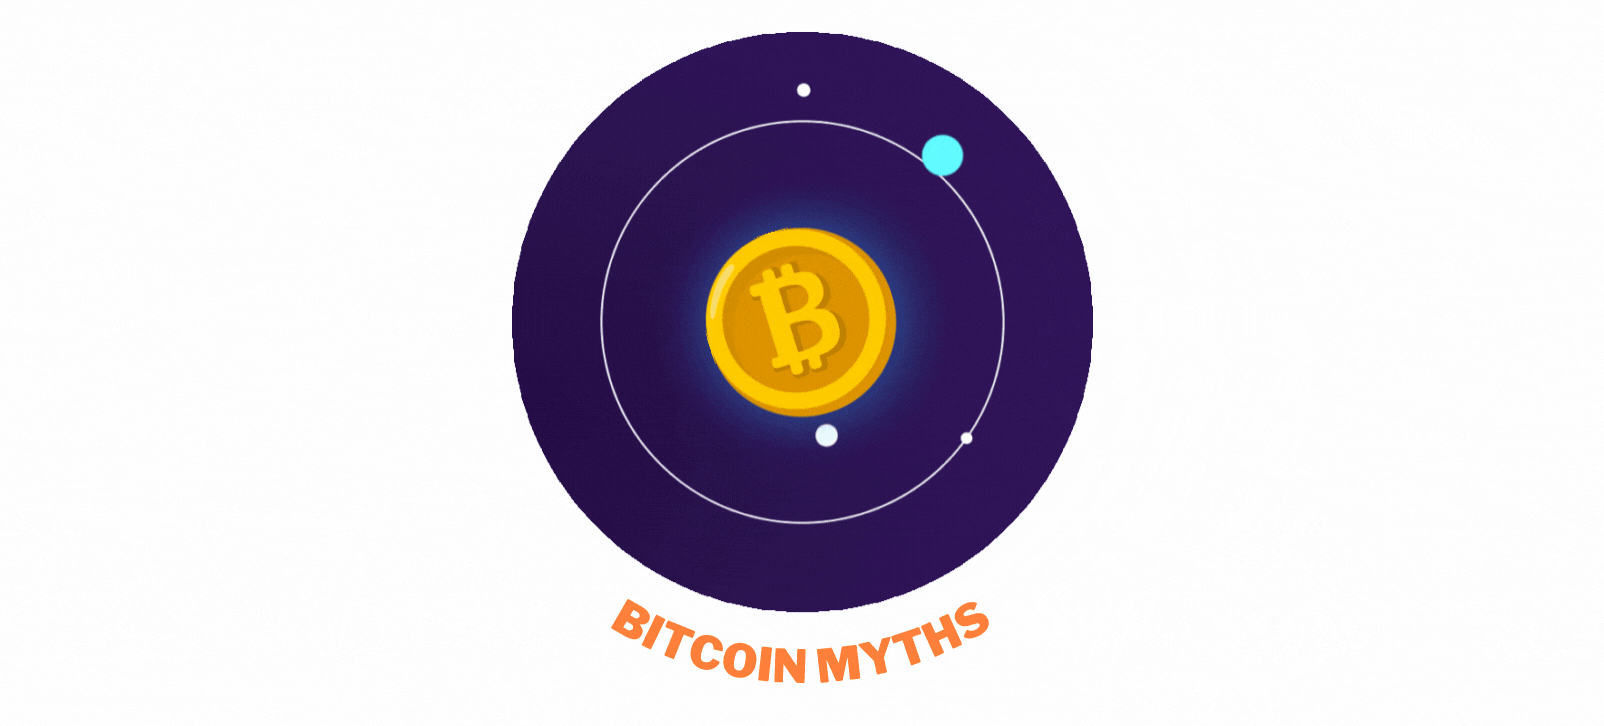 Animirana gif slika koja prikazuje Bitcoin novčić.